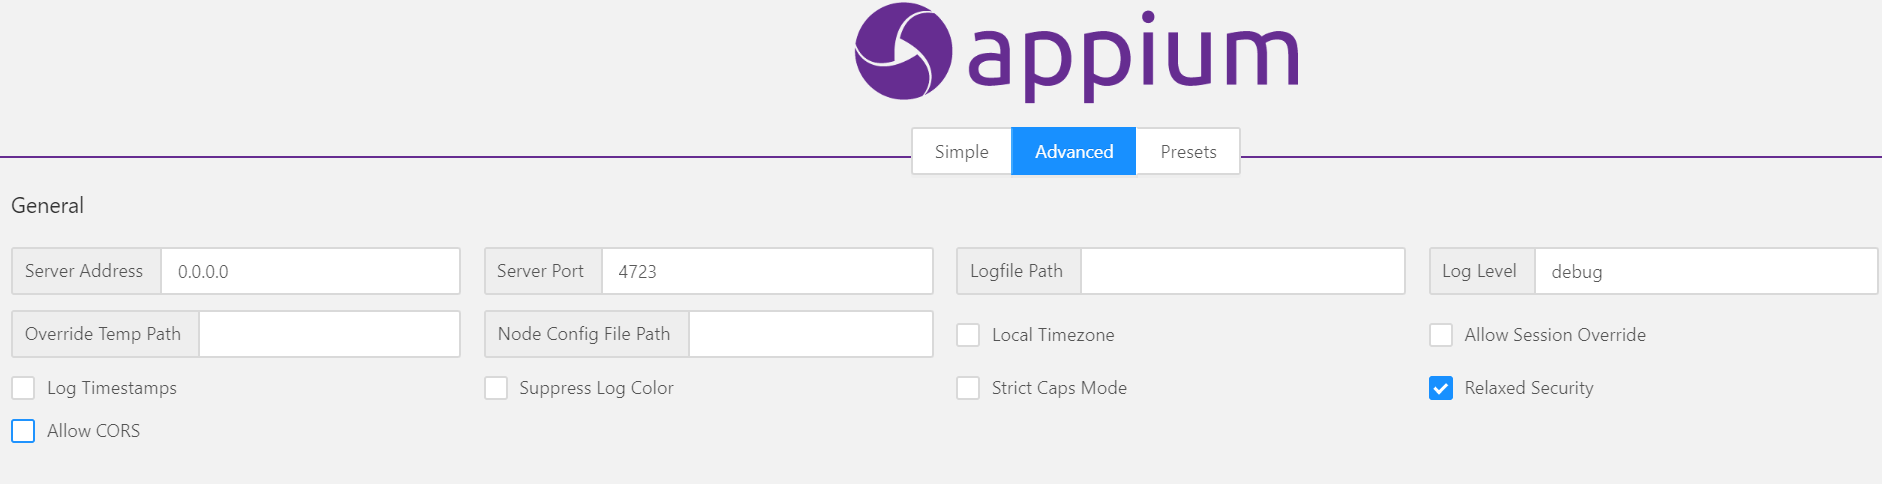 Appium自动化(3)：Appium-Desktop界面介绍_端口号_02